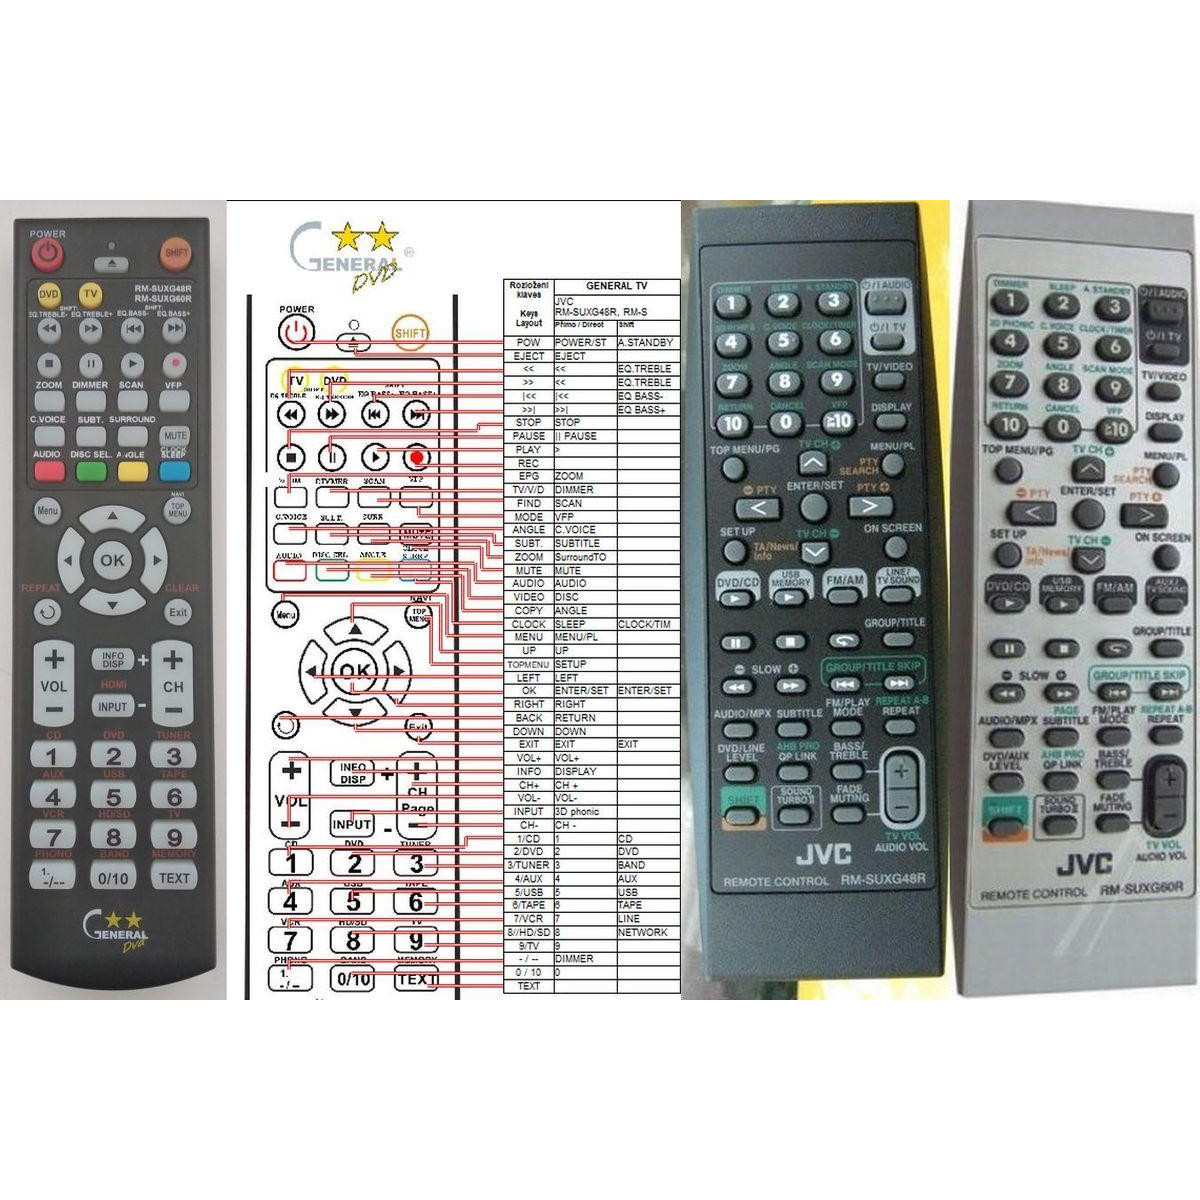 More about JVC RM-SUXG48R, RM-SUXG60R plus ovládání TV (mini TV) - dálkový ovladač duplikát kompatibilní